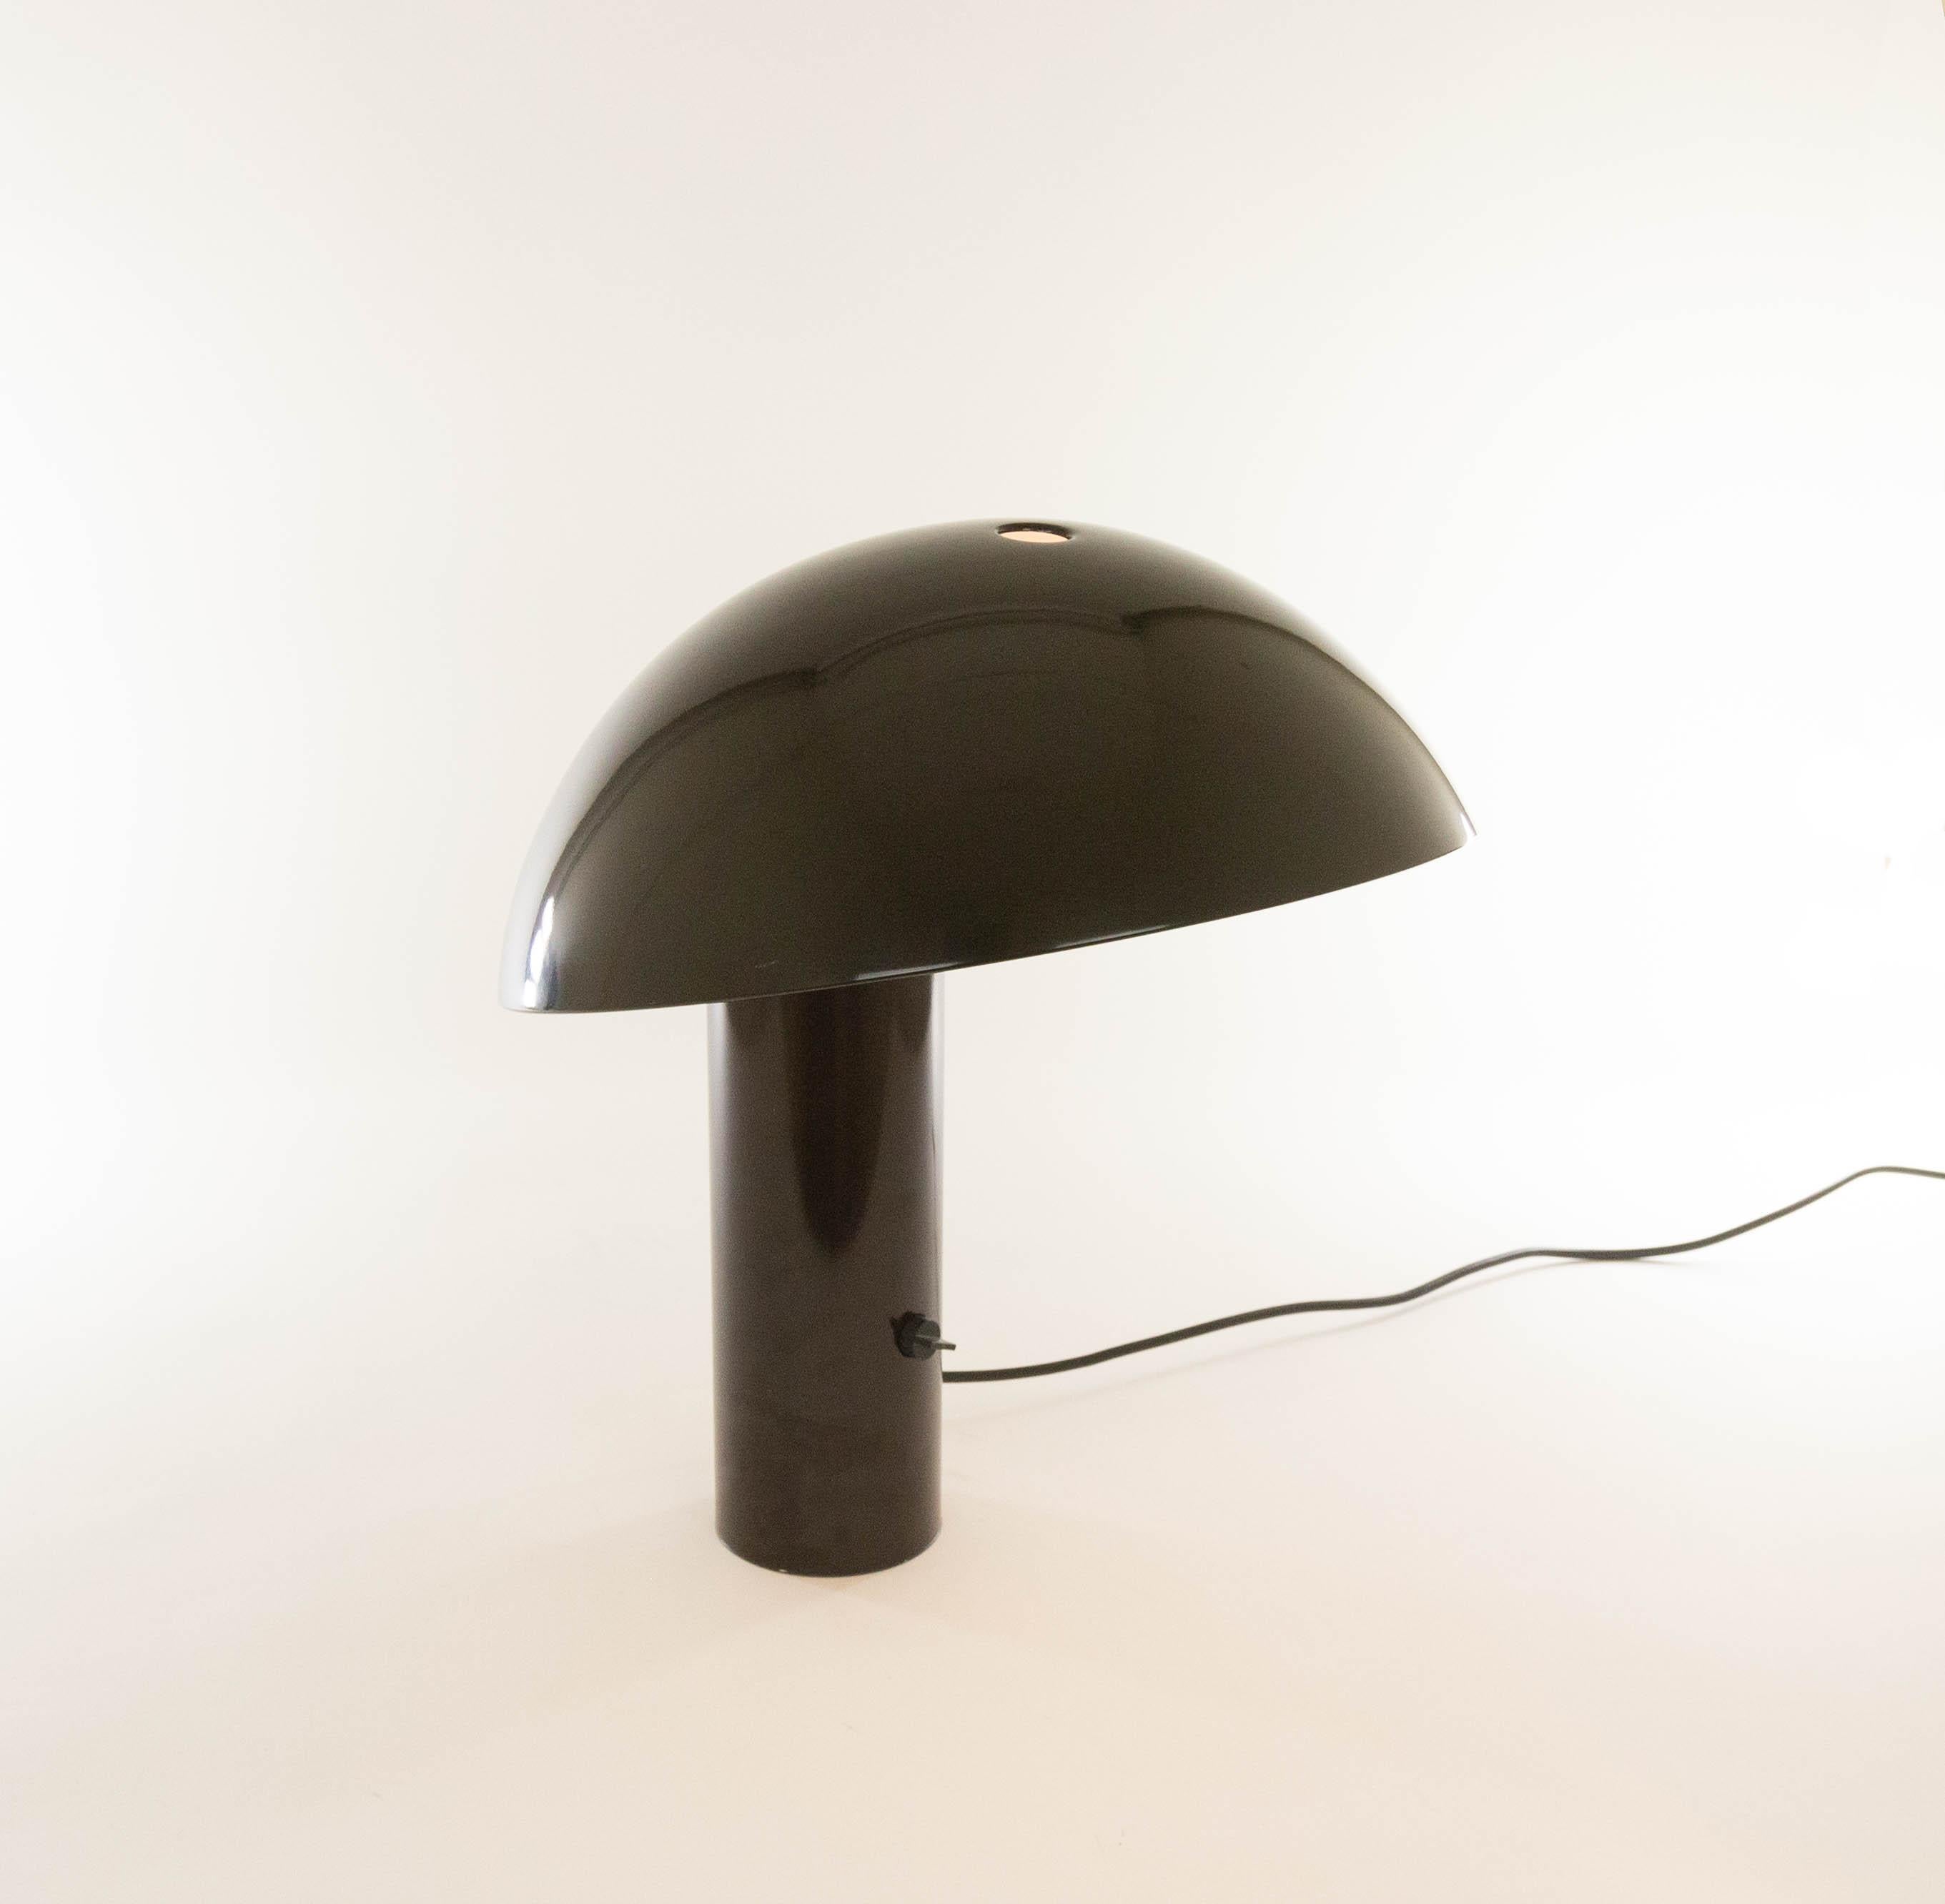 Lampe de table marron, modèle Vaga, dessinée par Franco Mirenzi en 1978 et produite par Valenti Luce.

La base relativement lourde fournit un équilibre solide pour le sommet rond en métal assez grand de la lampe. La lampe est en métal et